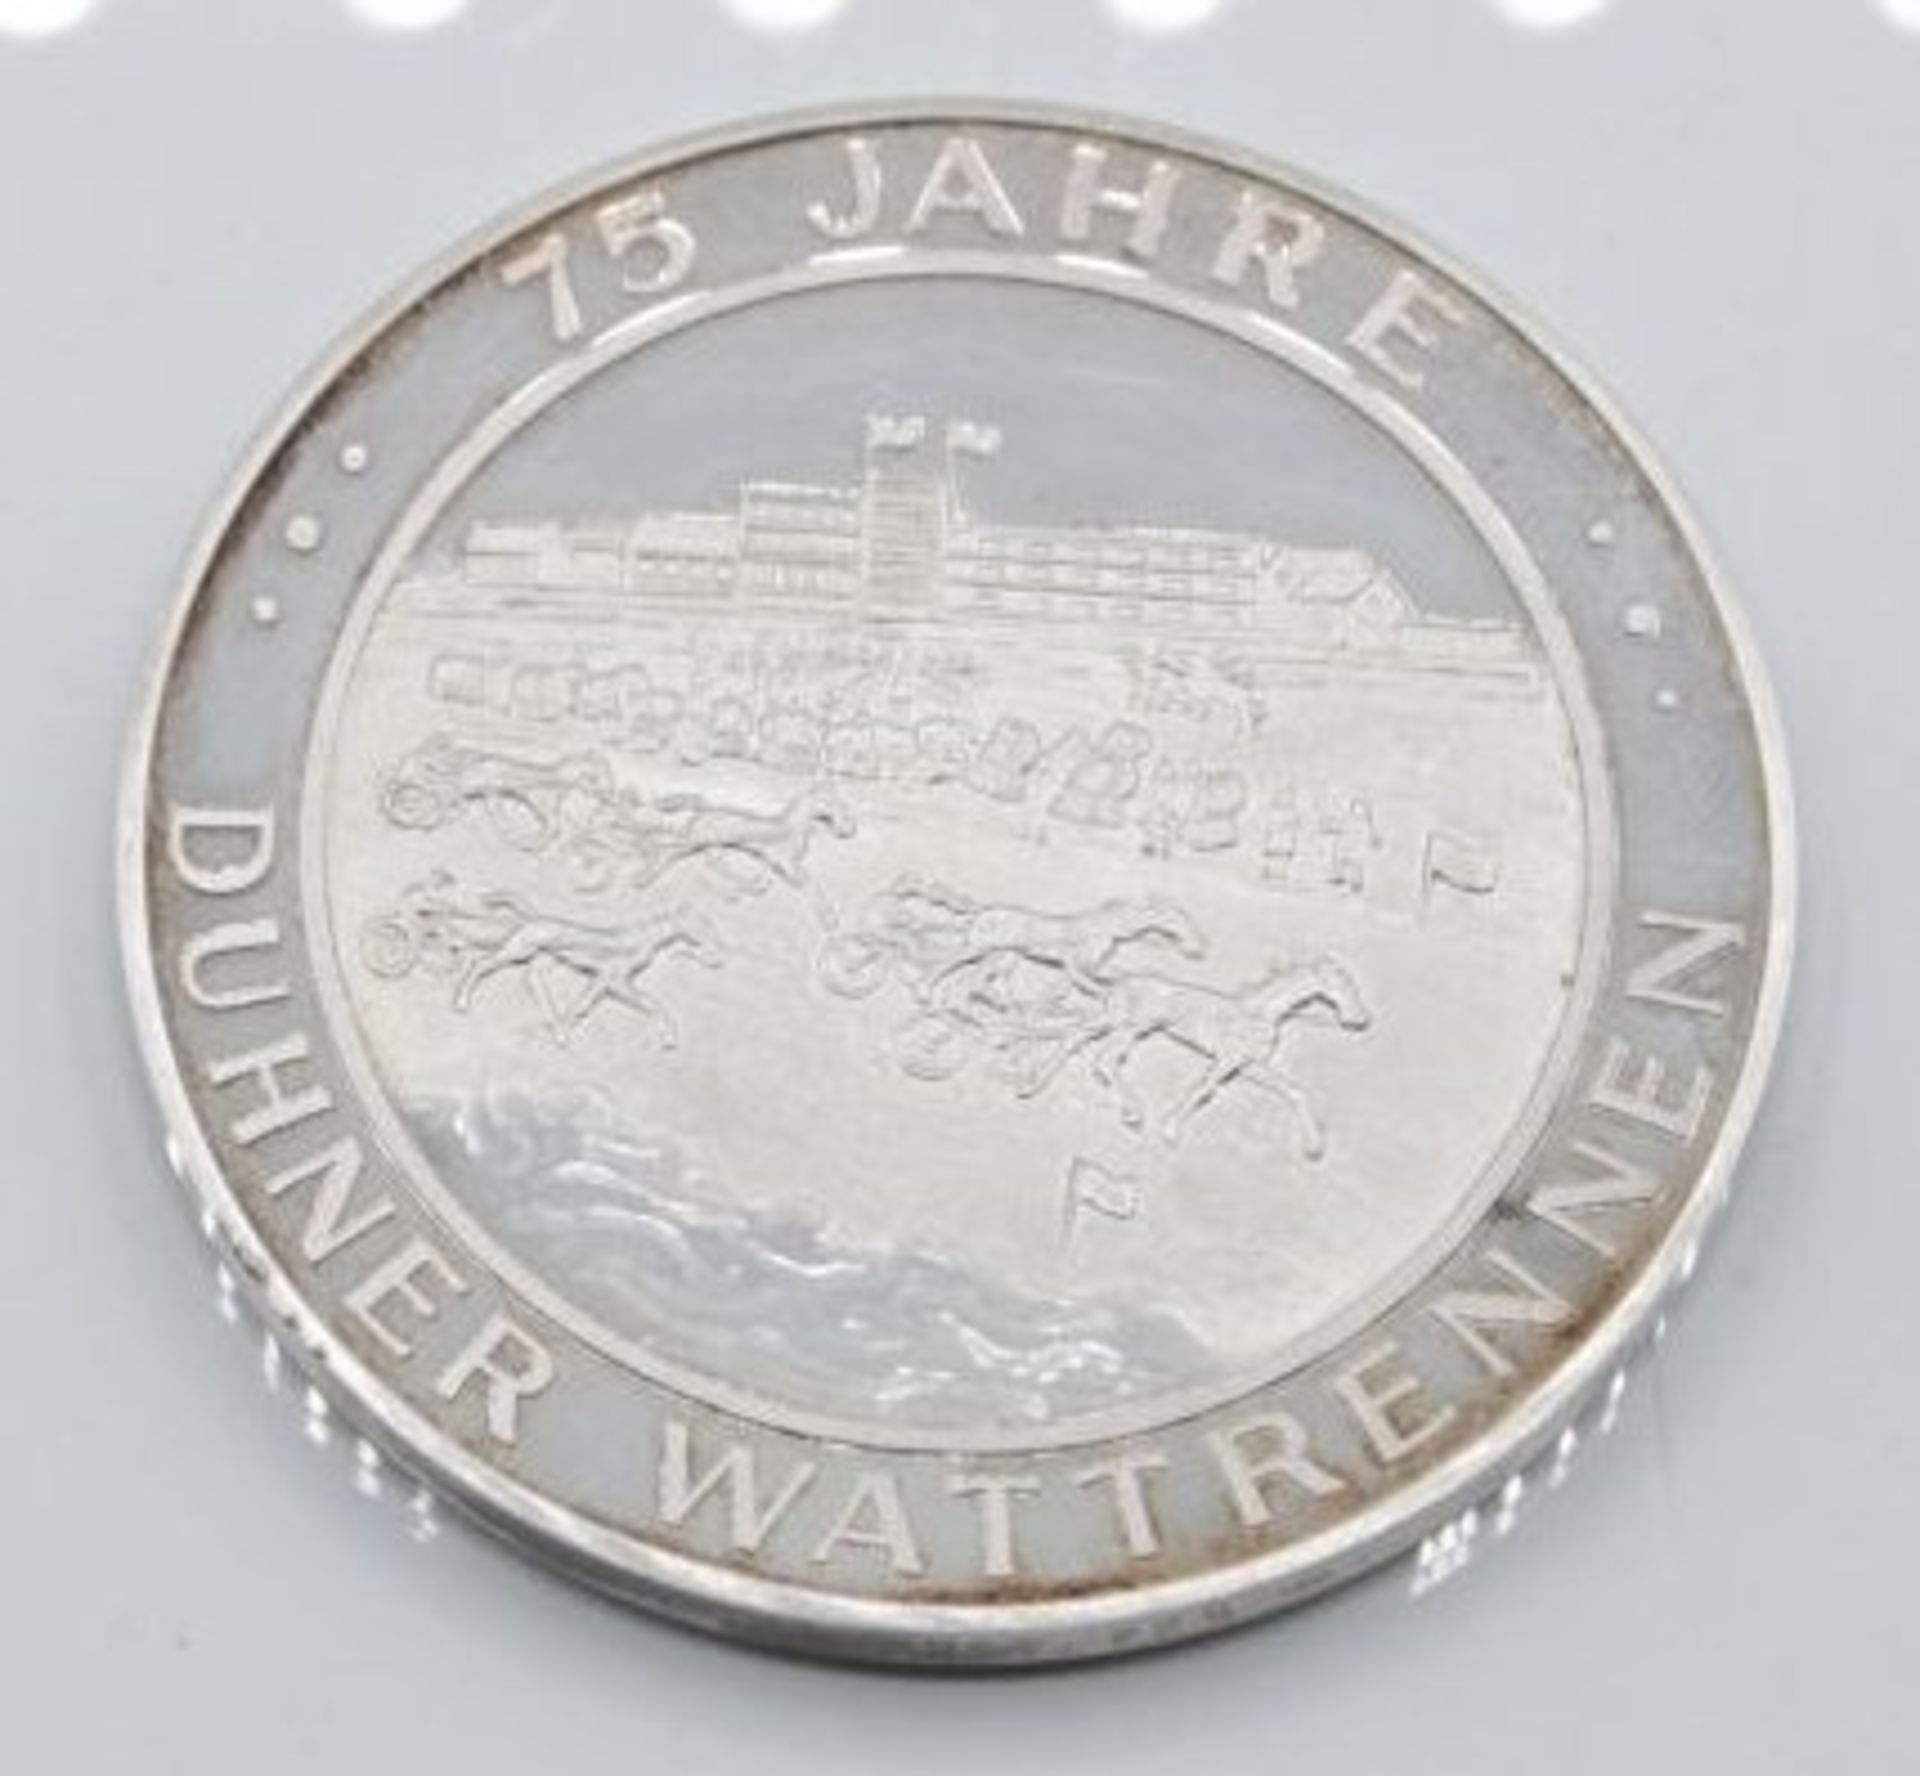 gr. Medaille, 75 Jahre Duhner Wattrennen, Nordseebad Cuxhaven, Silber, 50,9gr., D-5cm.